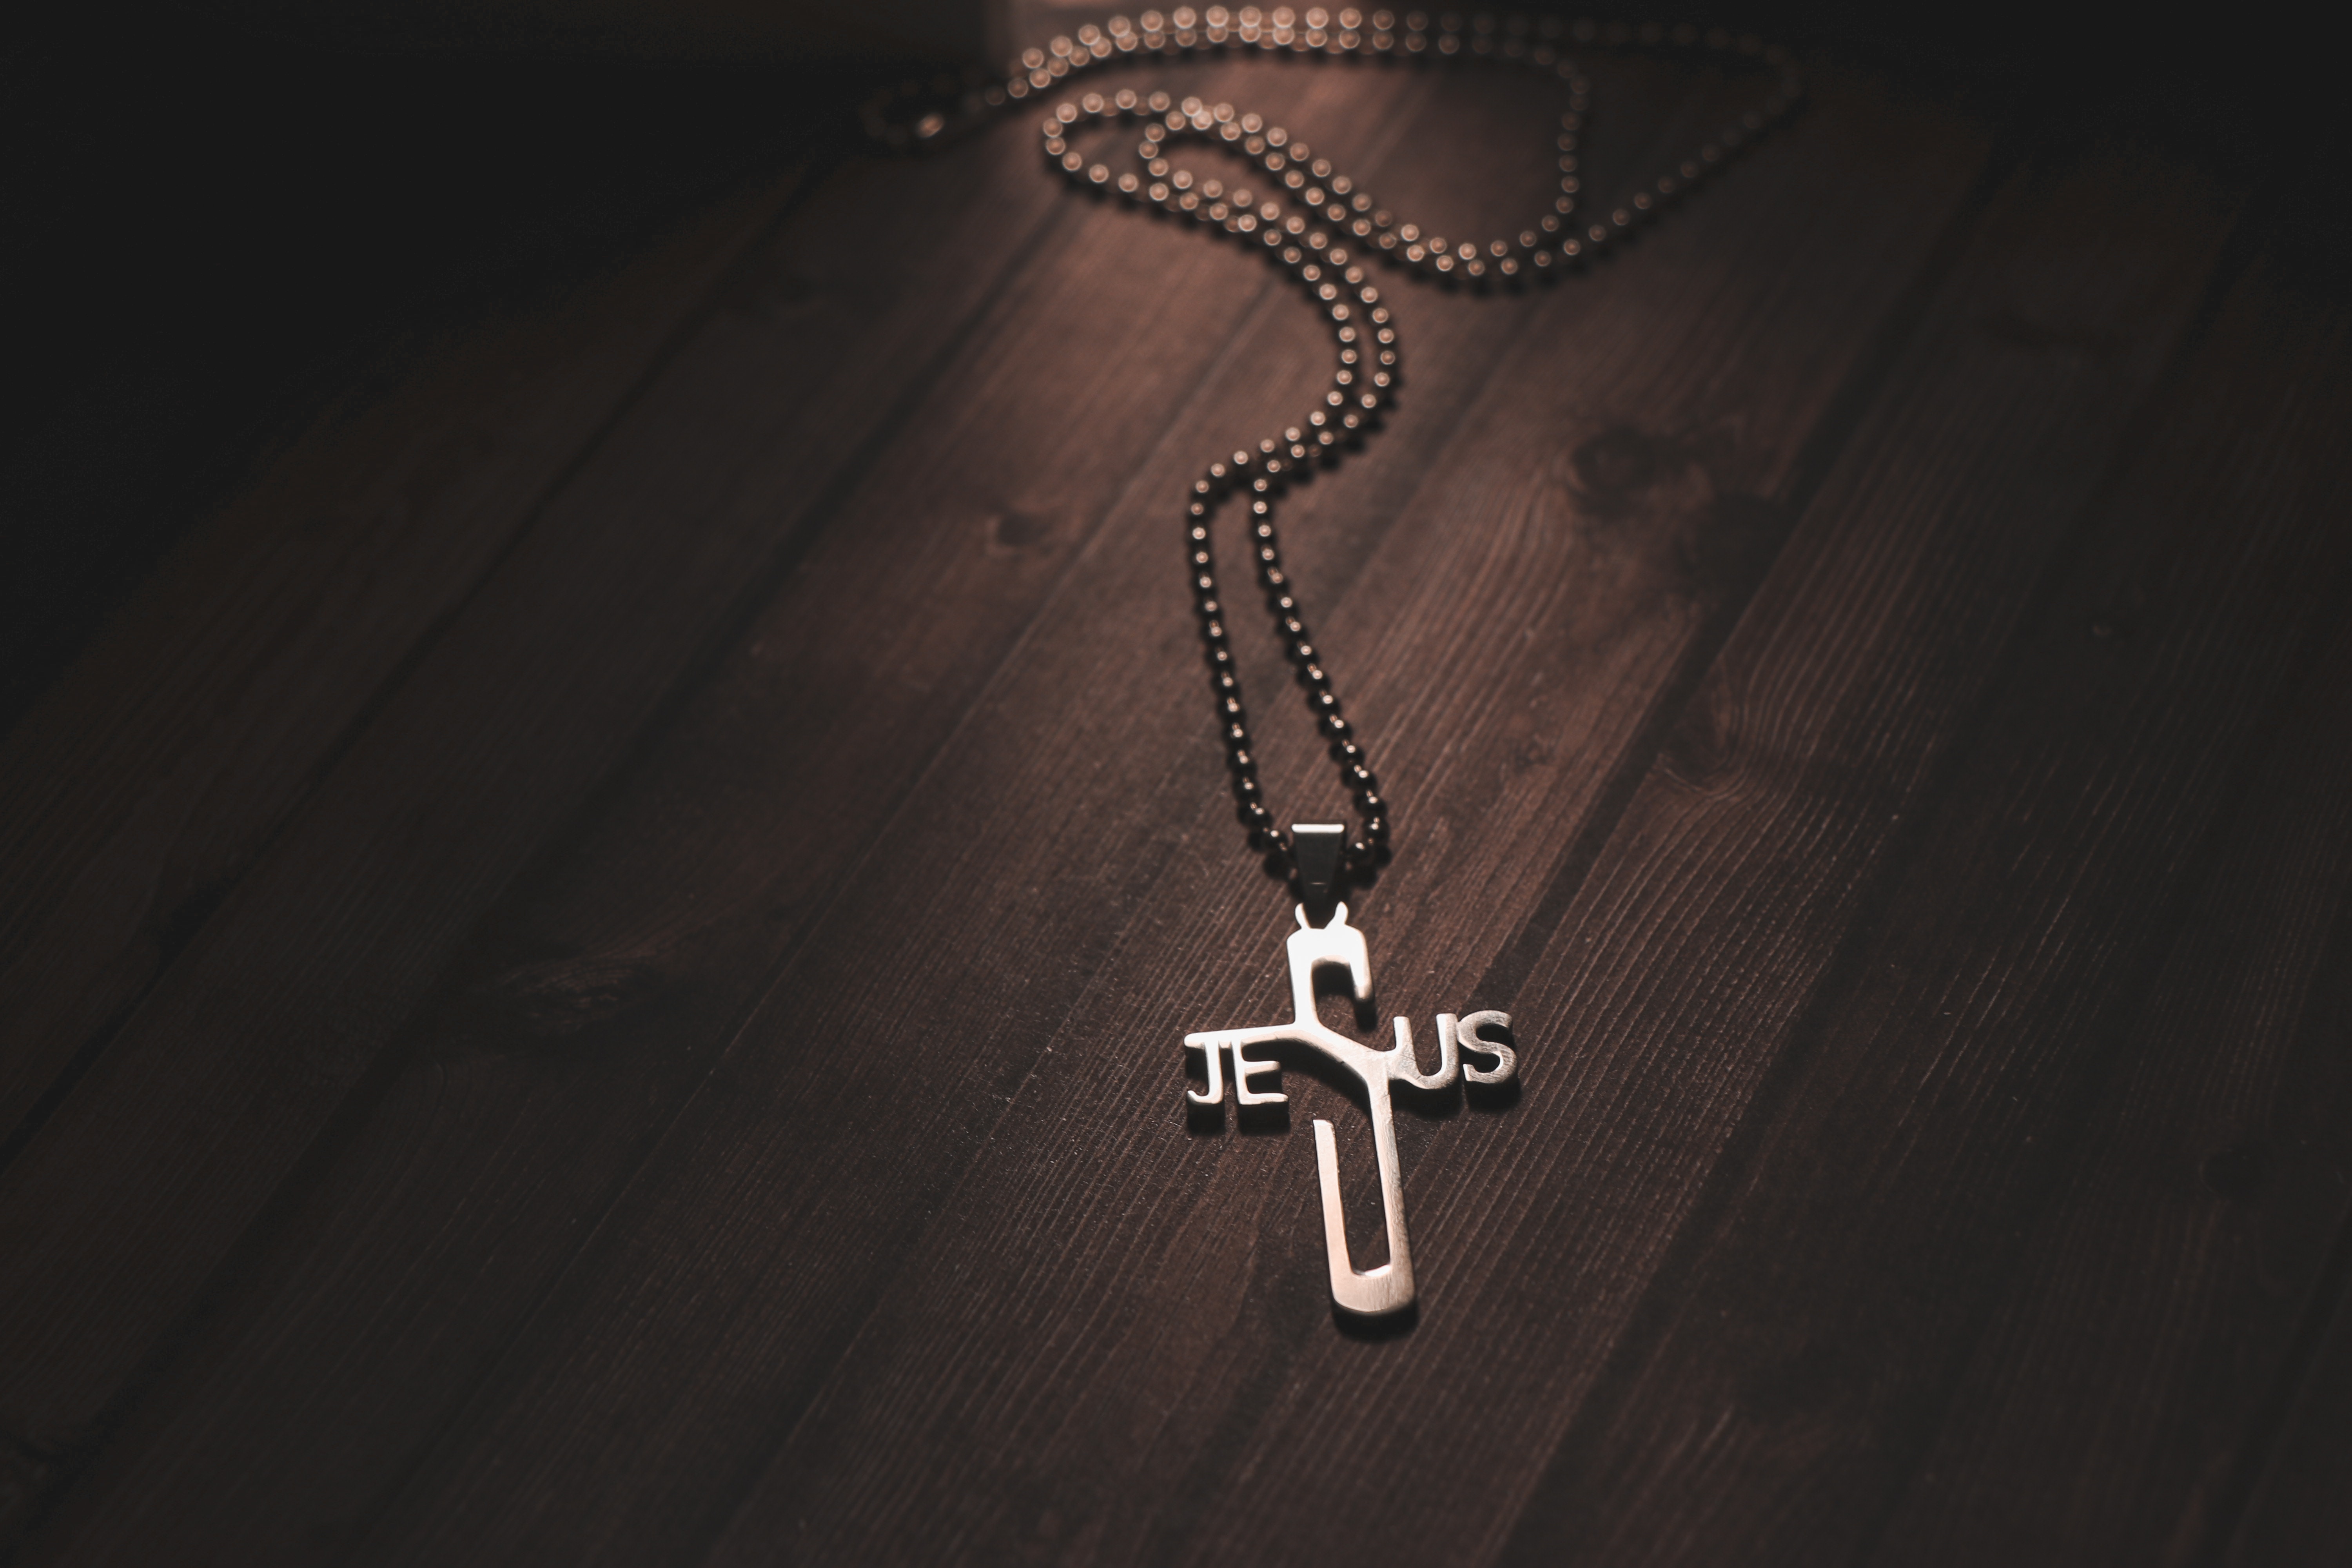 Христианские обои на рабочий стол, трест, цепочка с крестом, цепочка с именем Иисус.